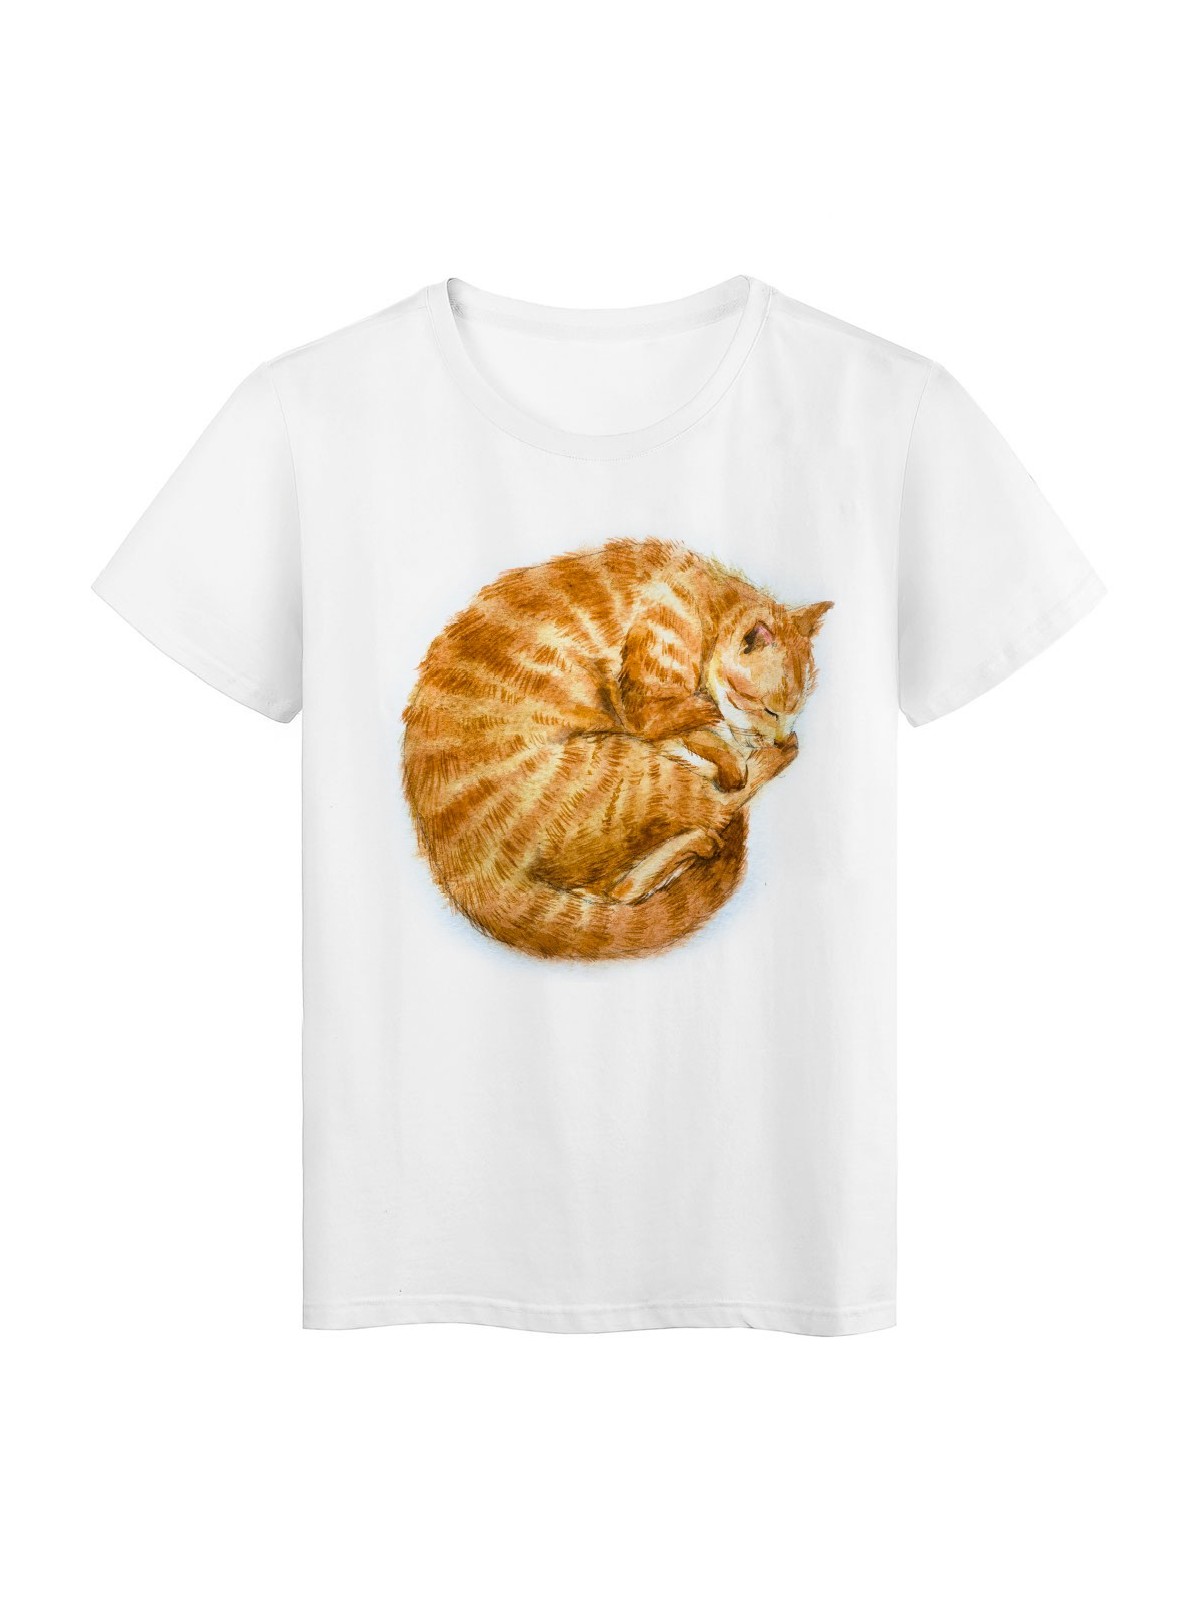 T-Shirt blanc Design animal chat rÃ©f Tee shirt 2173